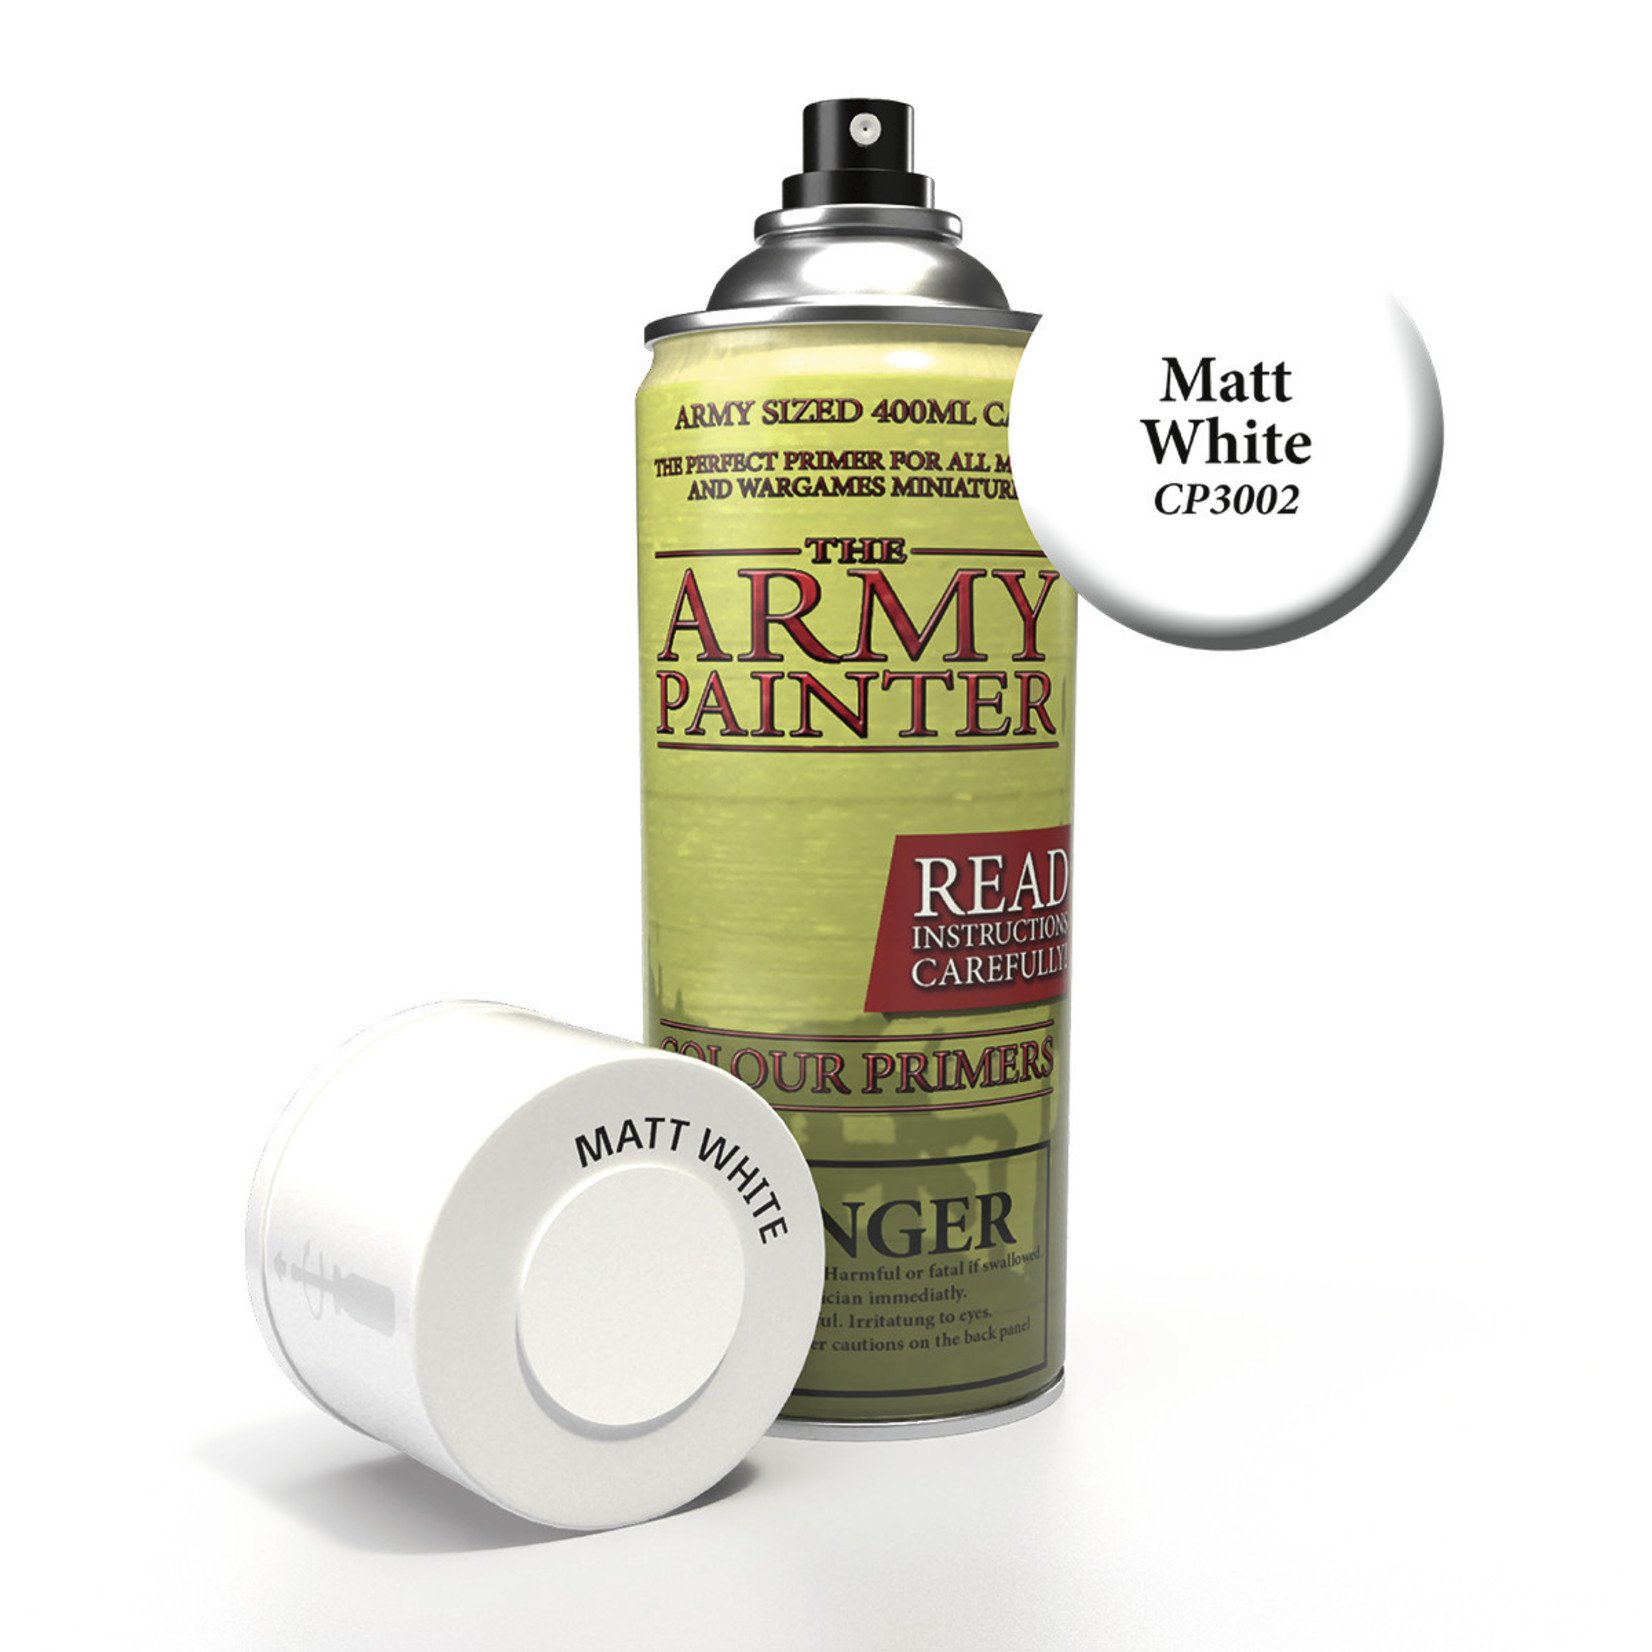 Army Painter Matt White Undercoat 400ml Spray